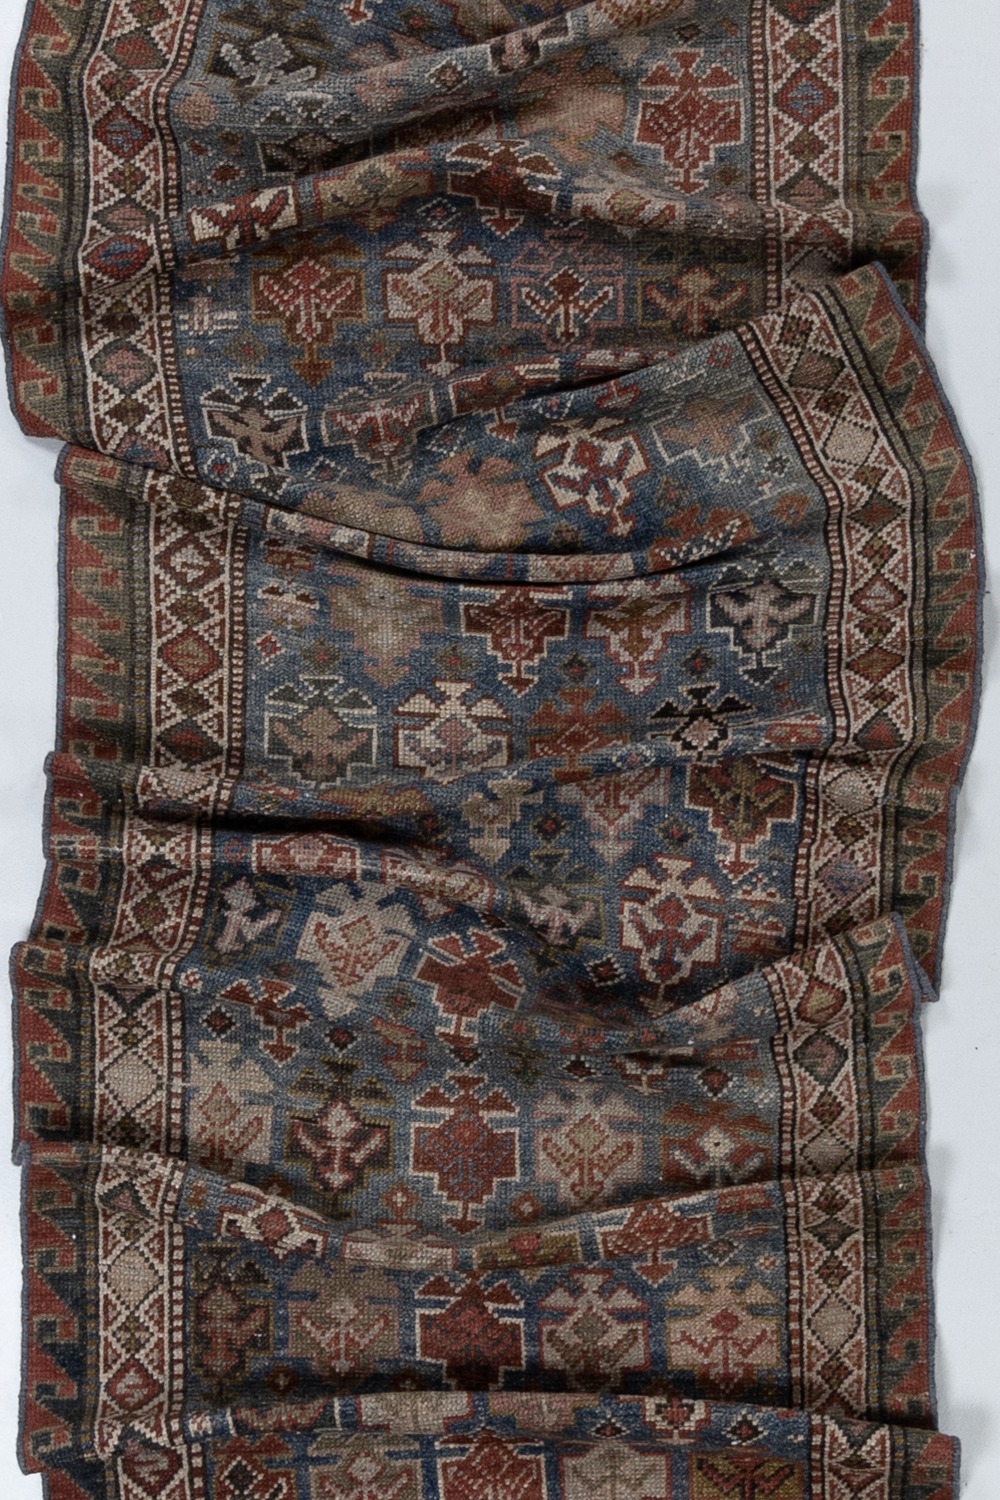 Antique Persian Bidjar Runner Rug